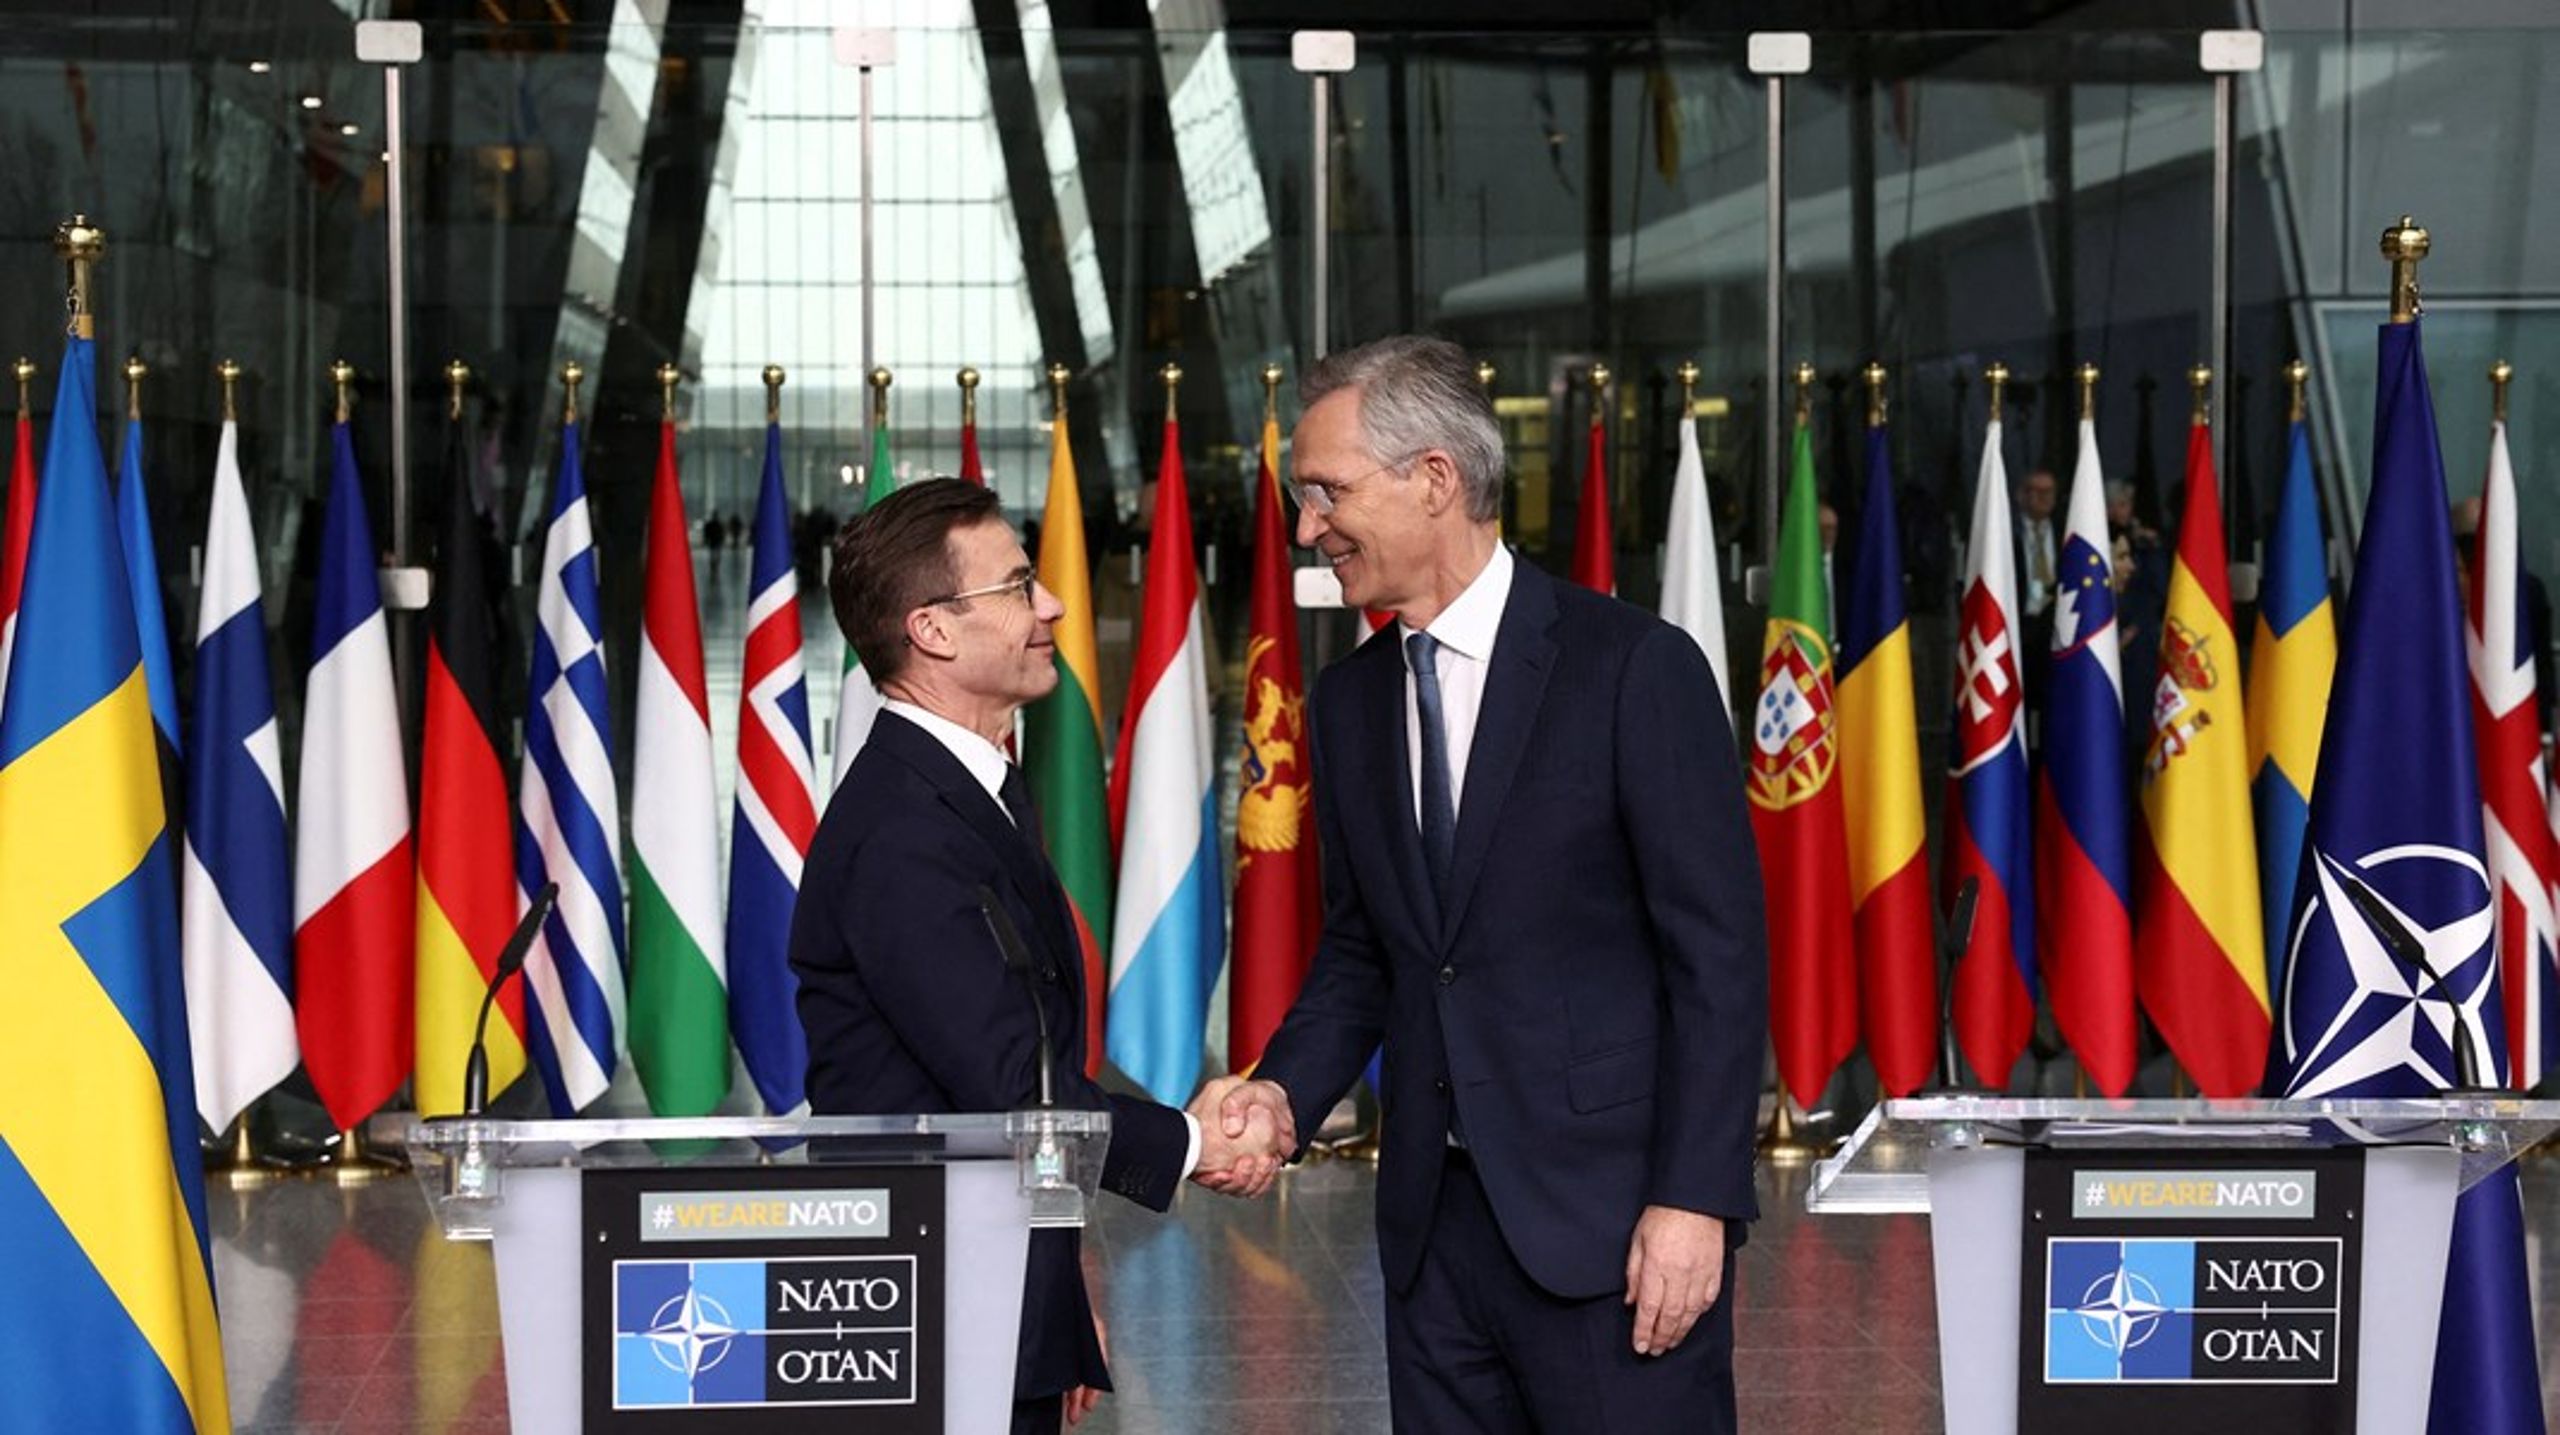 Mandag ble det svenske flagget endelig heiset i Natos hovedkvarter i Brussel. Sveriges statsminister Ulf Kristersson og Natos generalsekretær Jens Stoltenberg holdt en felles pressekonferanse.